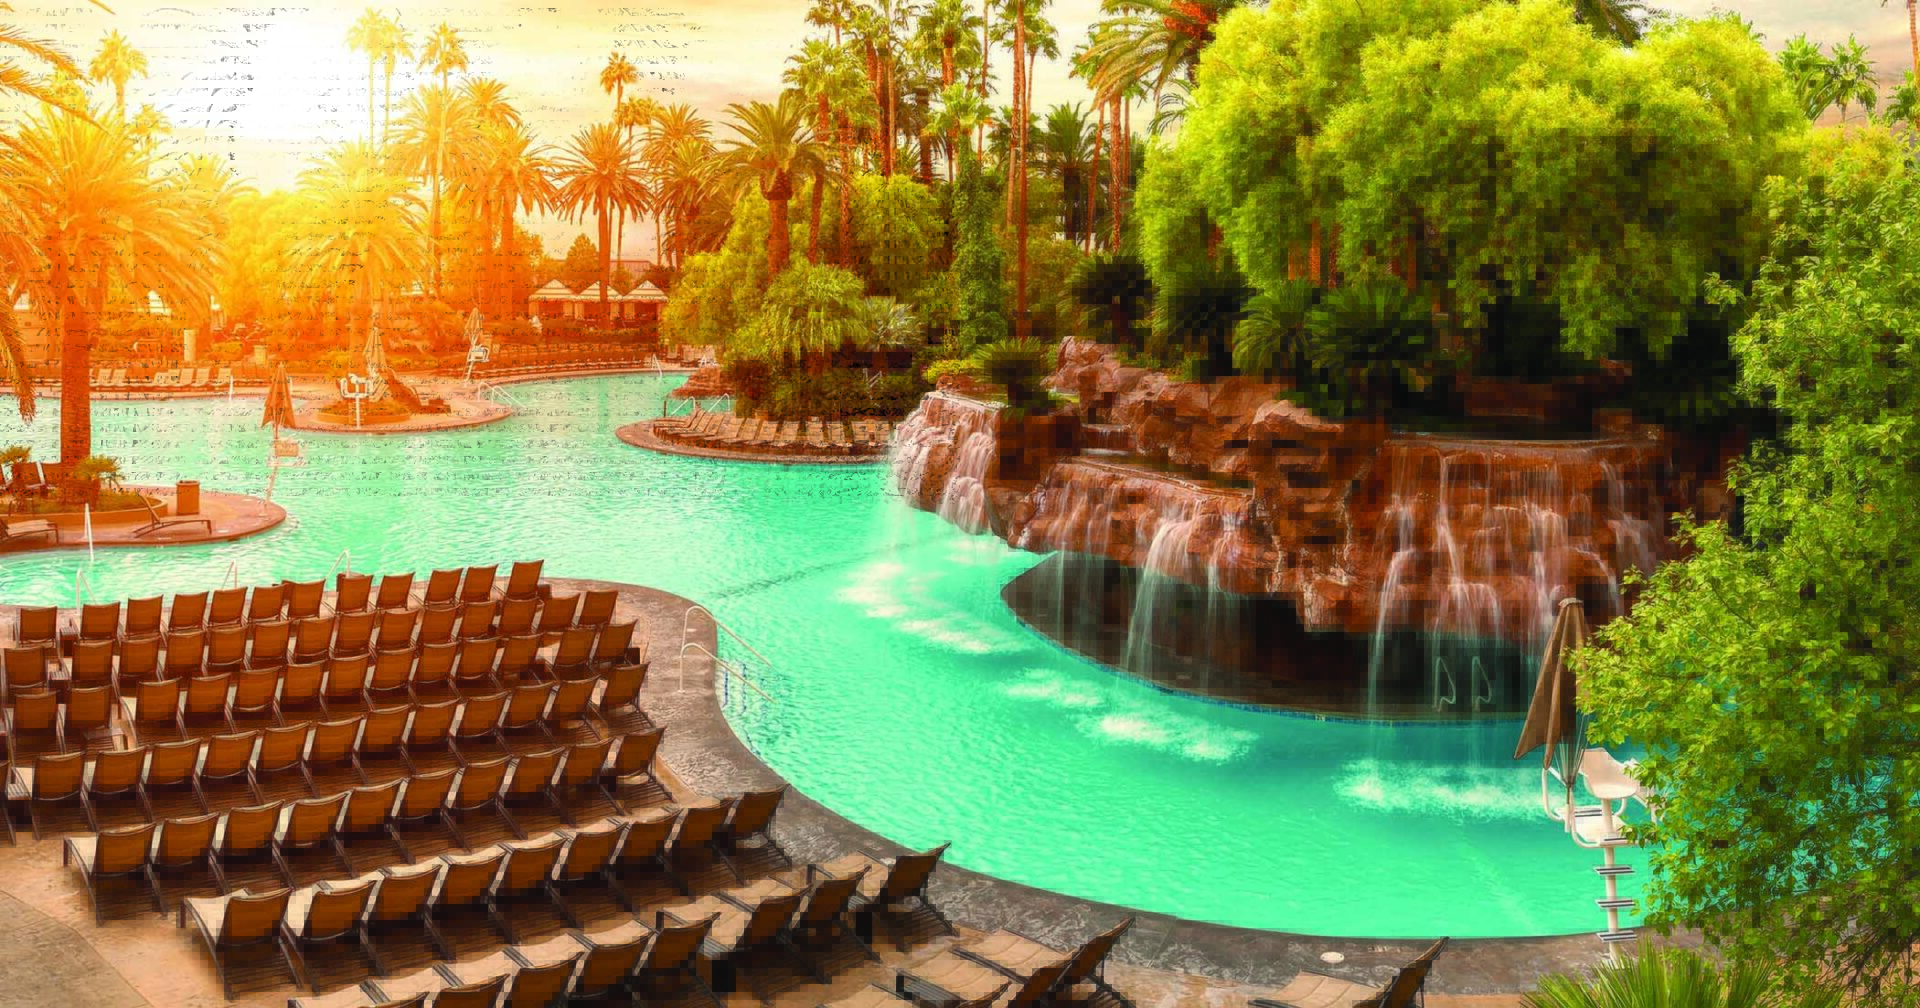 Mirage Pool - Best Las Vegas Pools